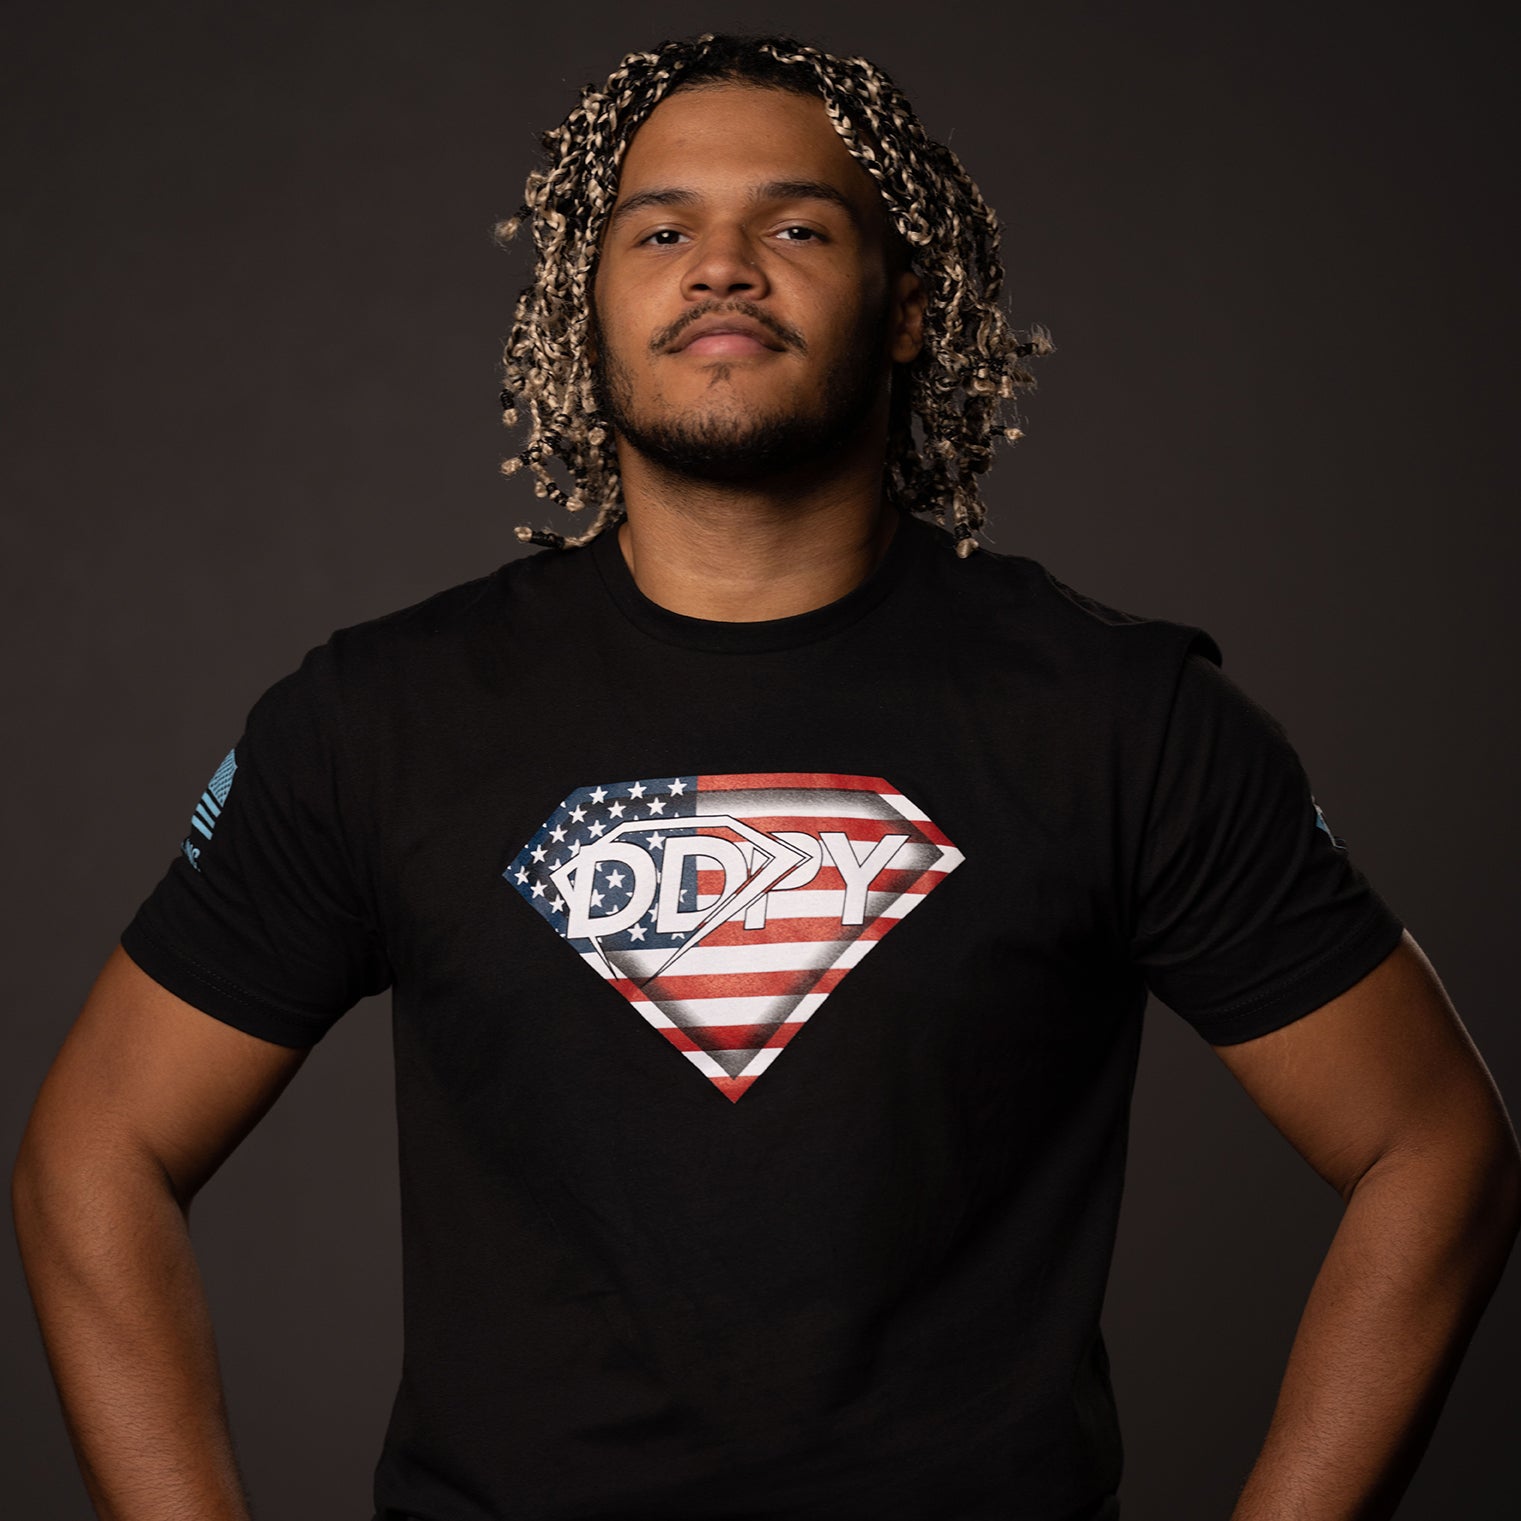 DDPY USA Hero Shirt